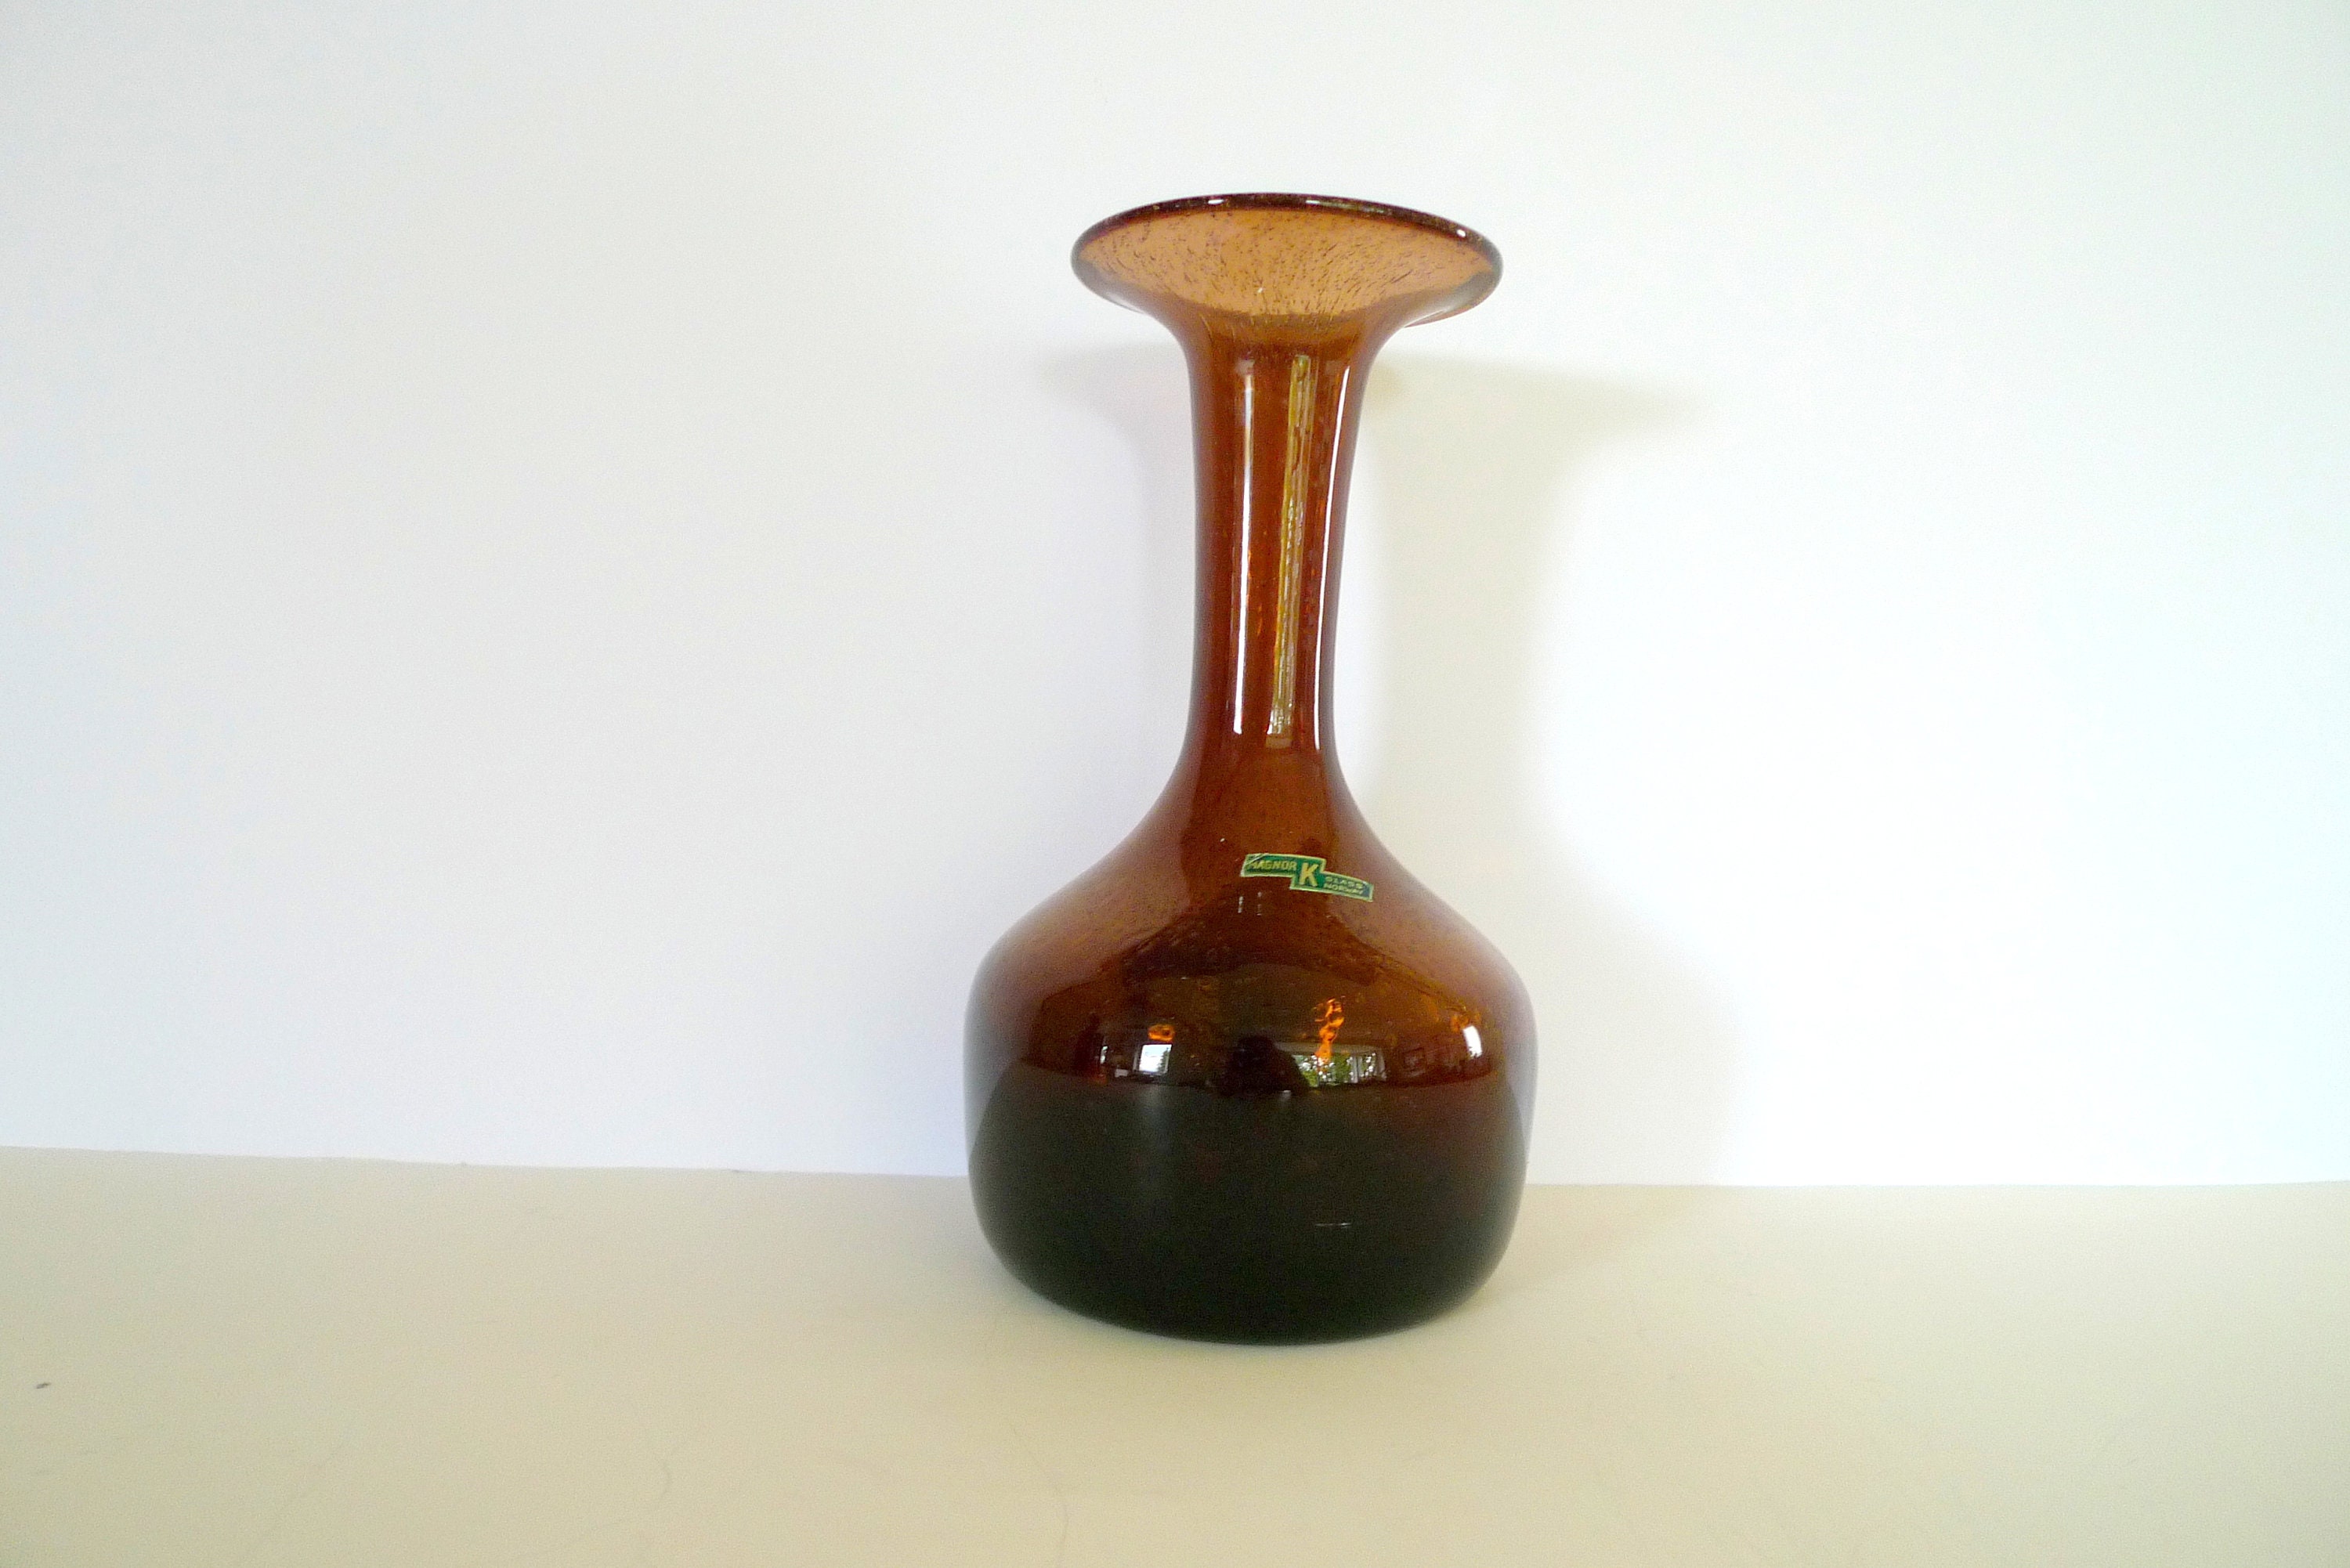 Magnor K Glass Vase Duborgh Glass 1970s - Etsy Denmark